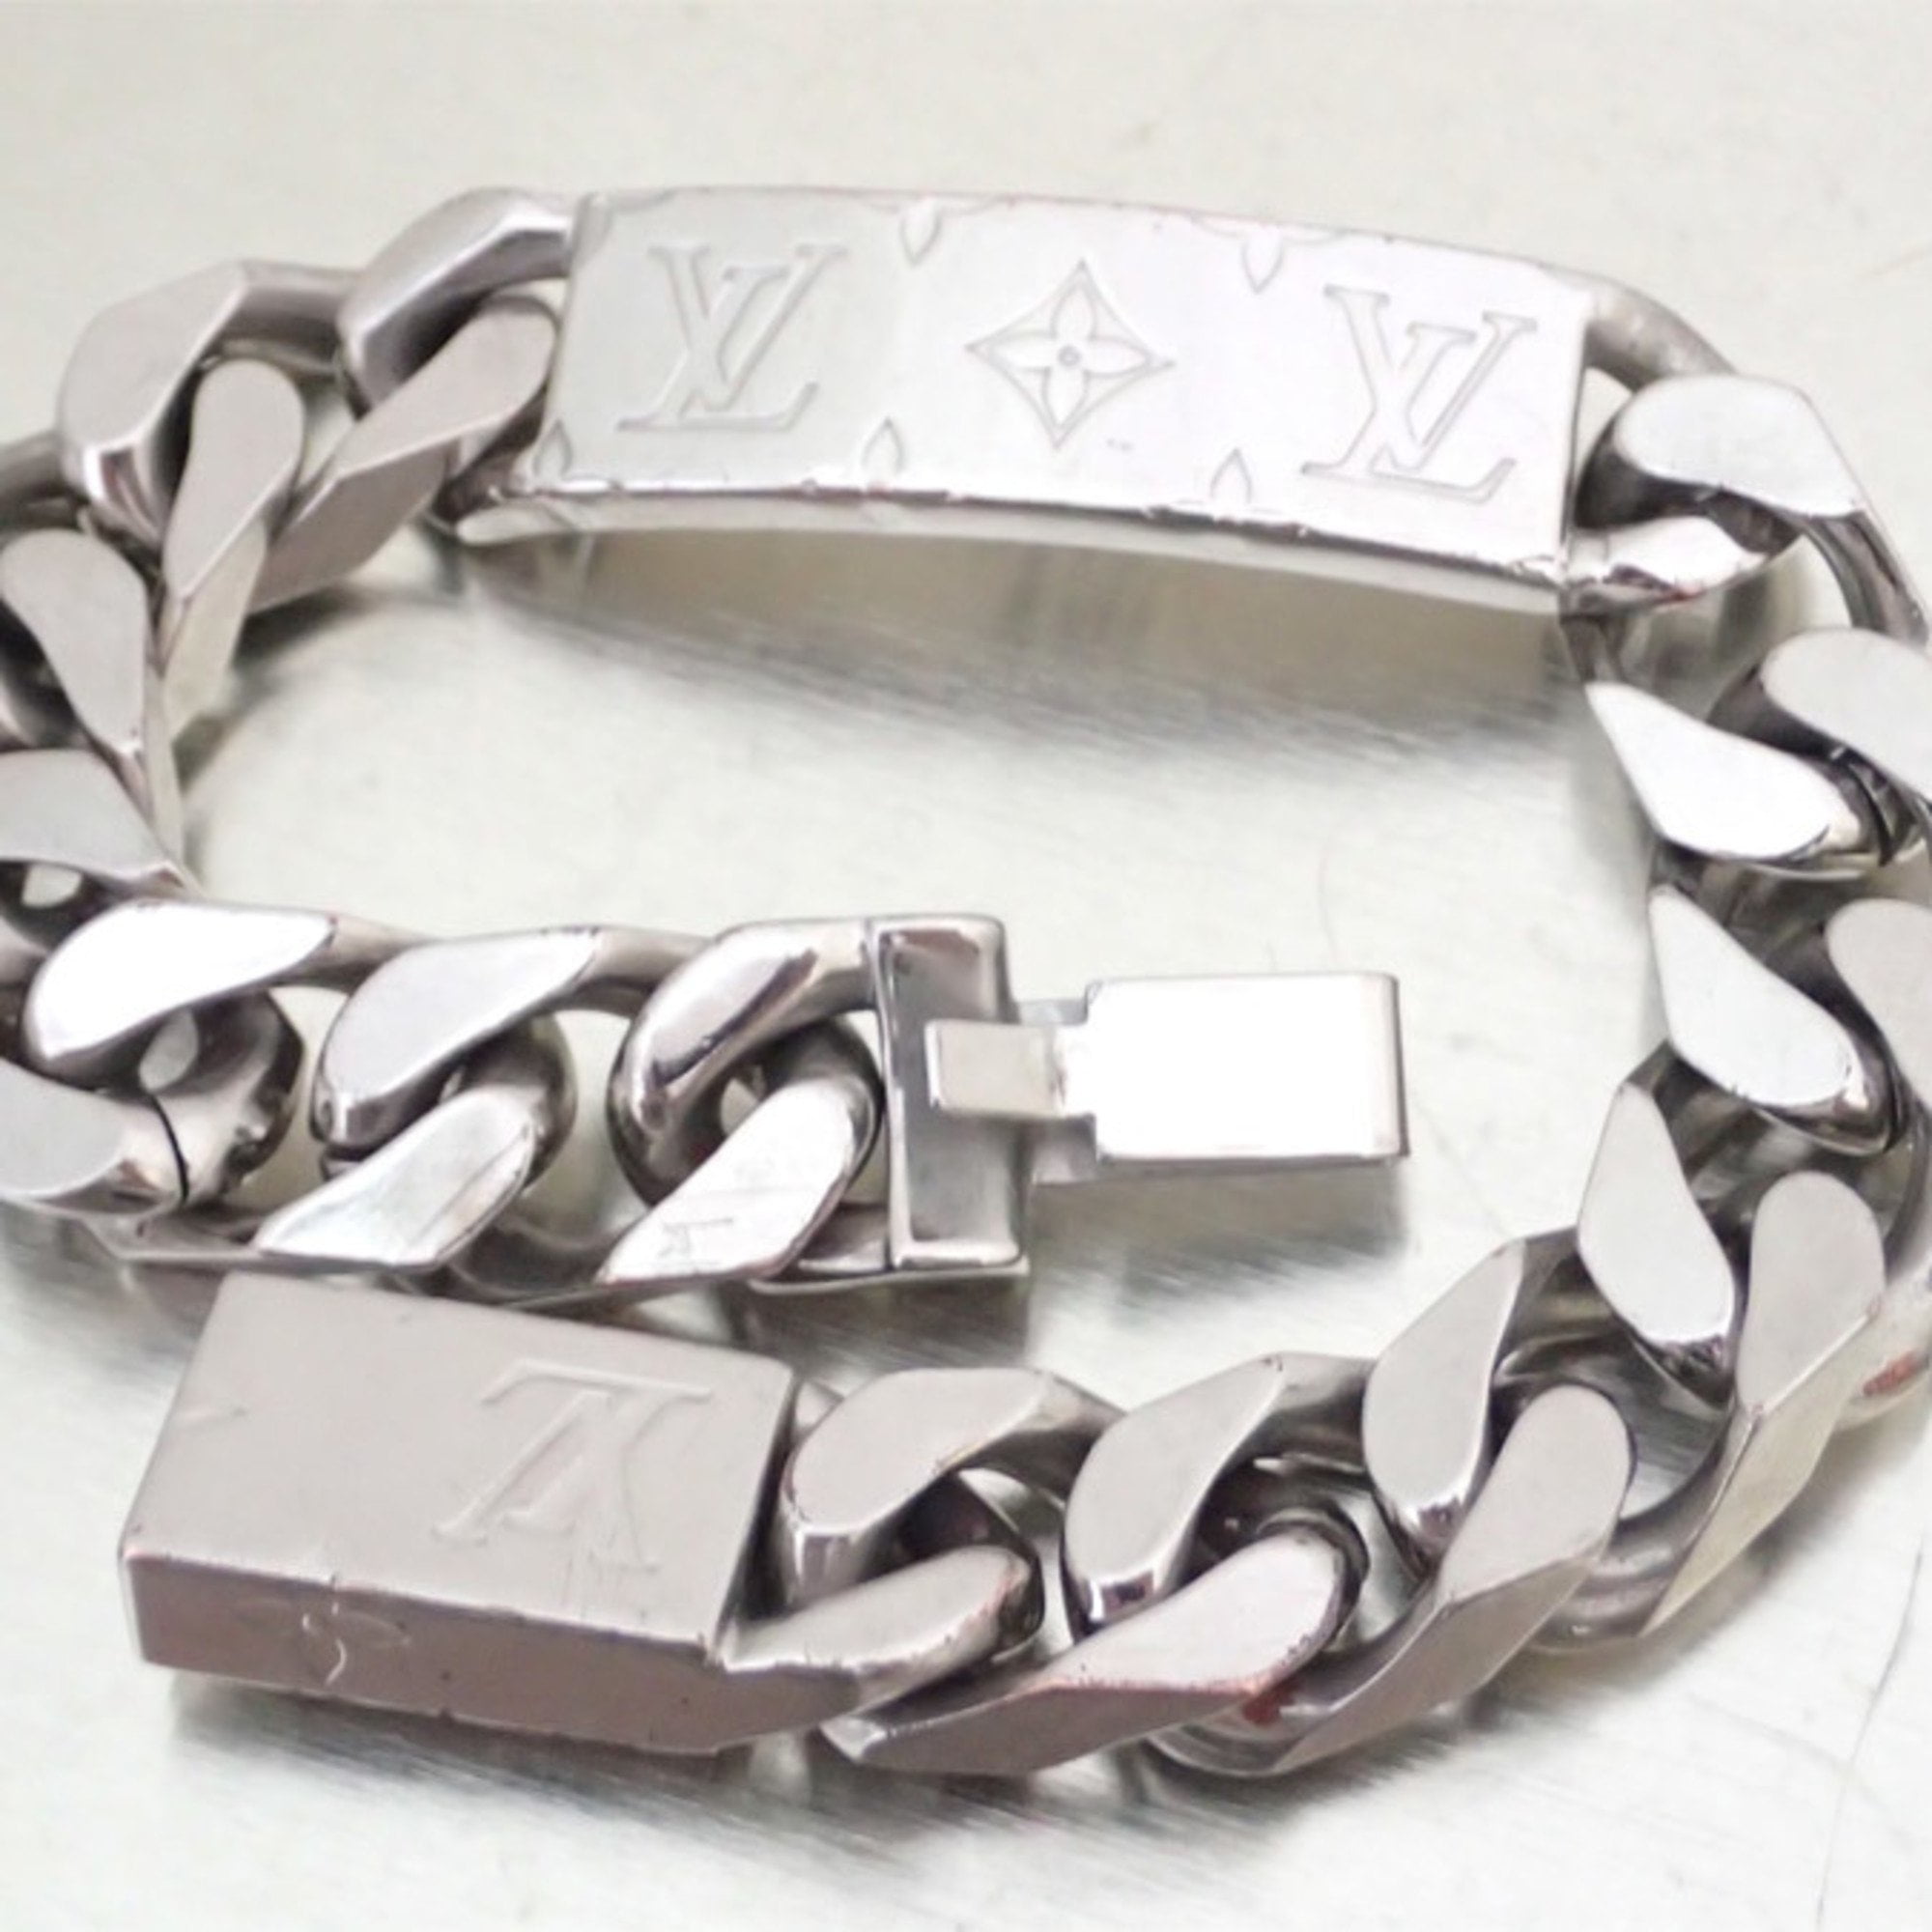 Louis Vuitton - Authenticated Monogram Bracelet - Silver for Women, Good Condition